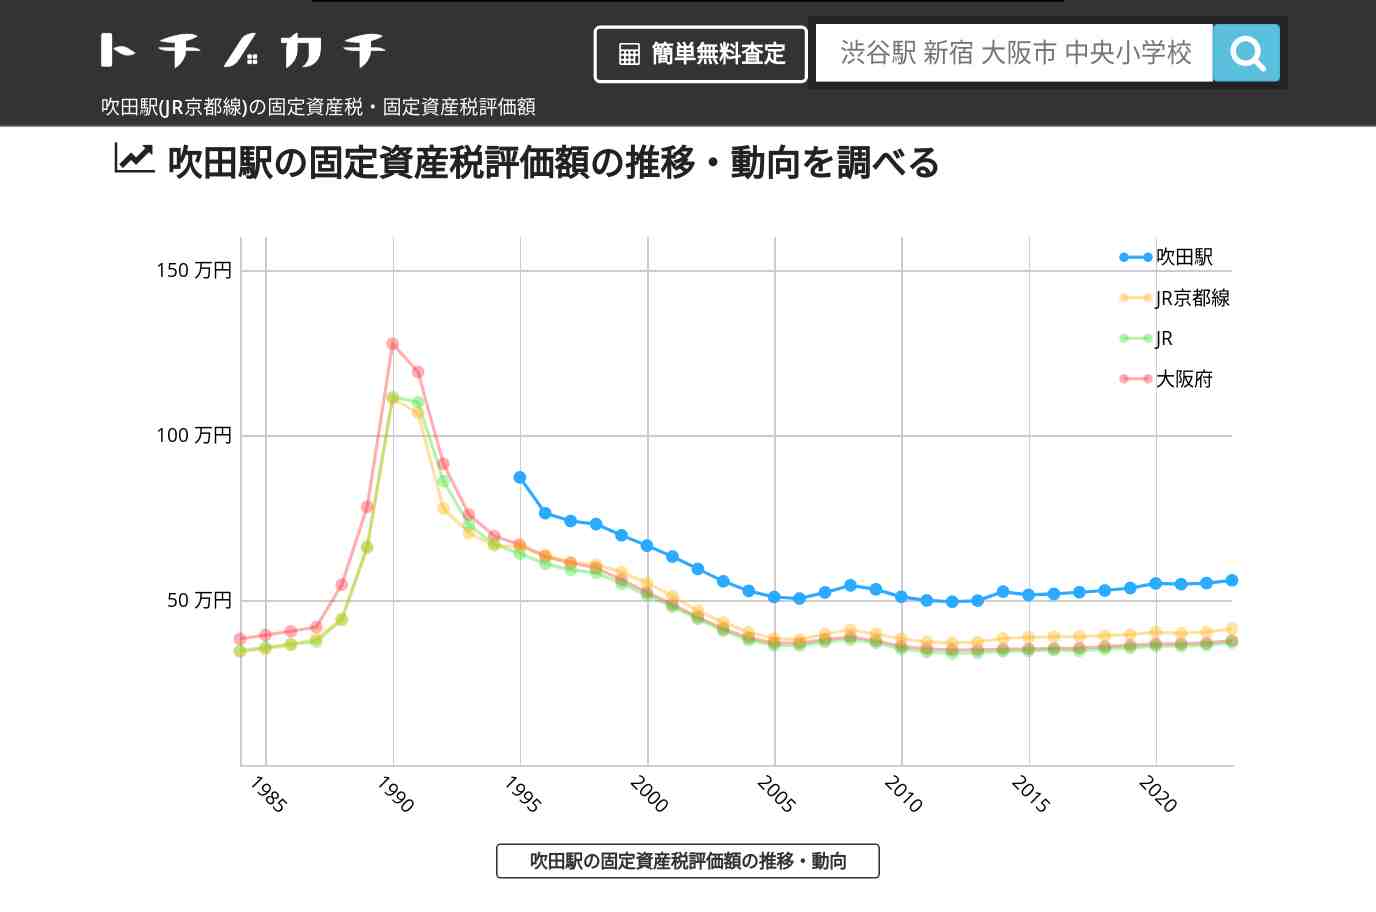 吹田駅(JR京都線)の固定資産税・固定資産税評価額 | トチノカチ